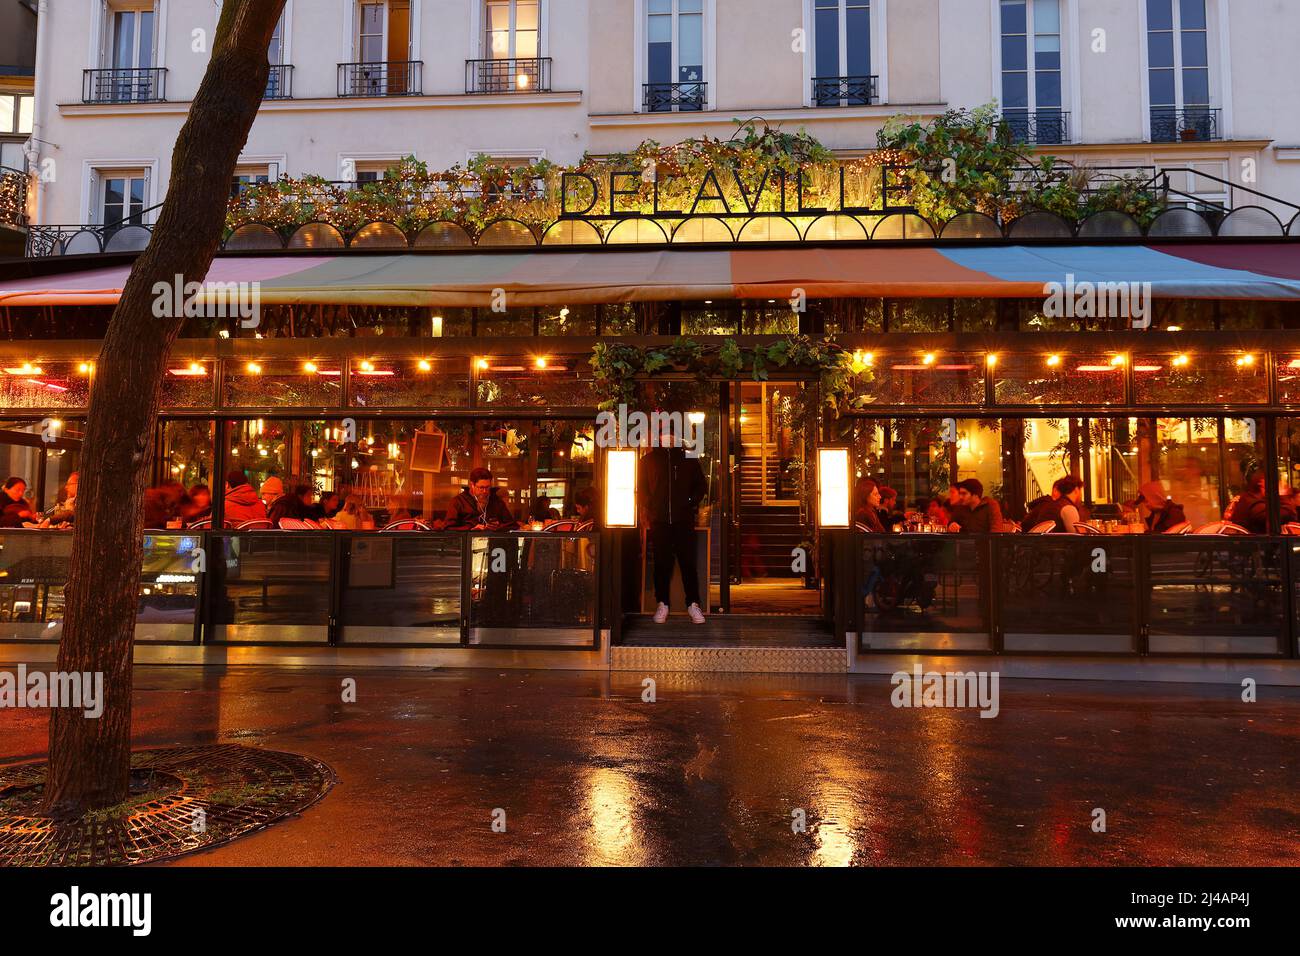 Le Delaville est un restaurant français traditionnel situé sur le boulevard bonne Nouvelle, près de la porte Saint Denis, à Paris, en France. Banque D'Images